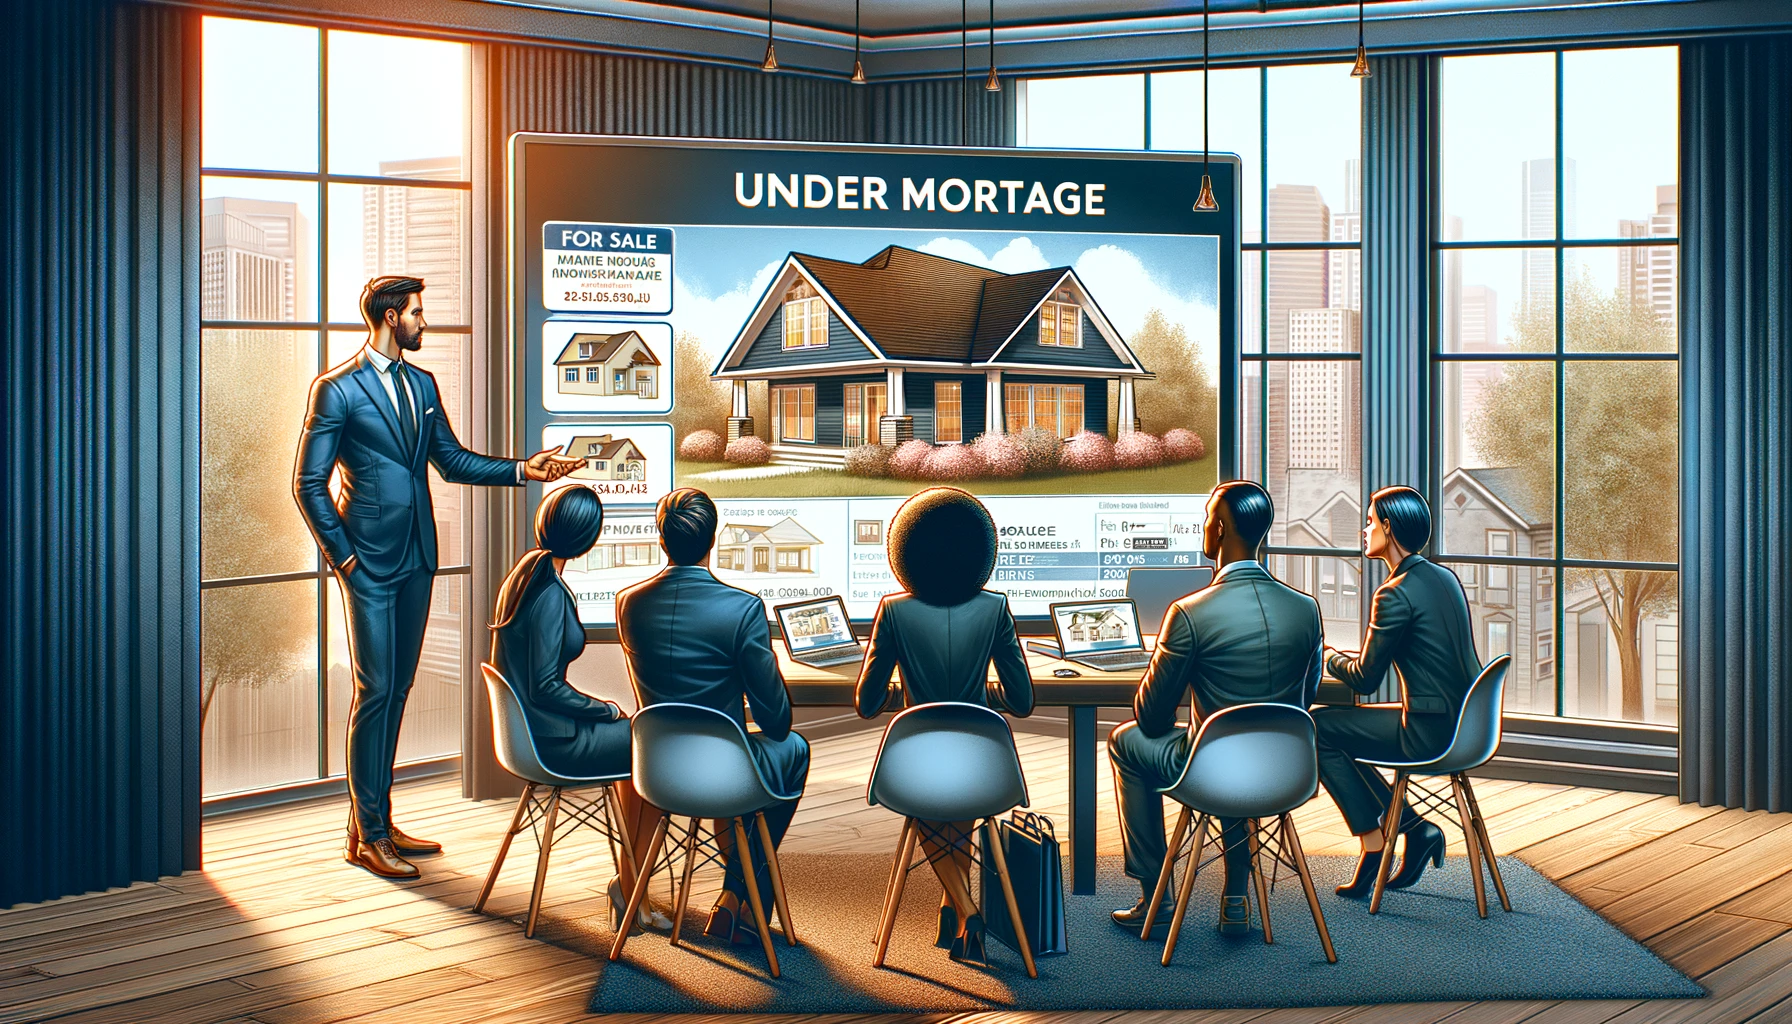 Vendre une Maison sous Hypothèque : Guide Complet et Conseils Pratiques